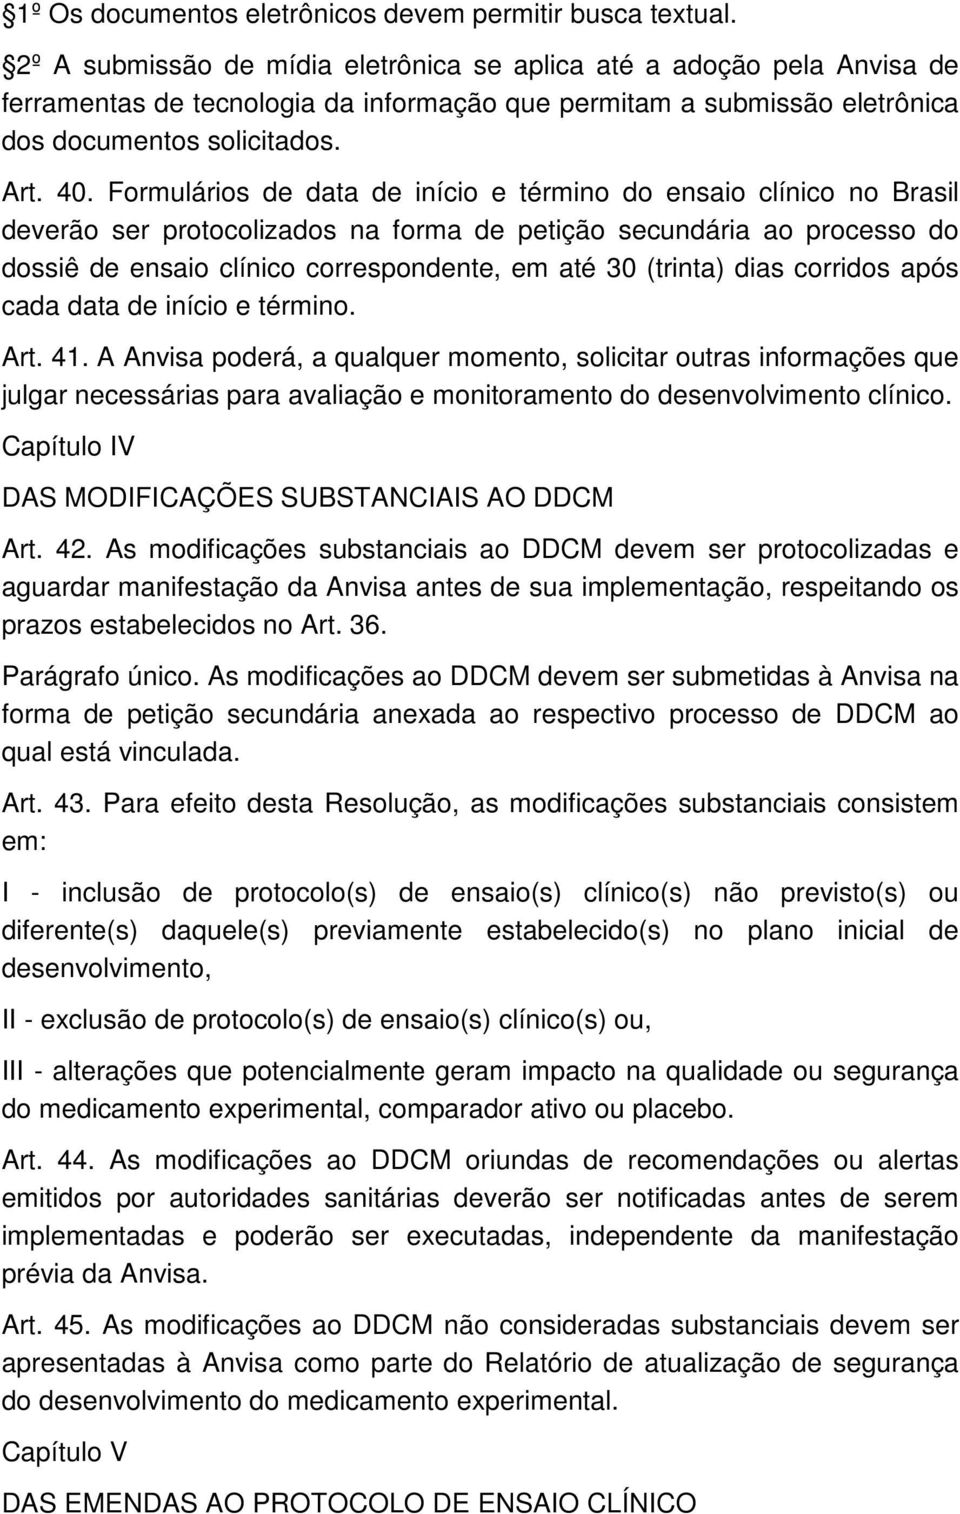 Formulários de data de início e término do ensaio clínico no Brasil deverão ser protocolizados na forma de petição secundária ao processo do dossiê de ensaio clínico correspondente, em até 30